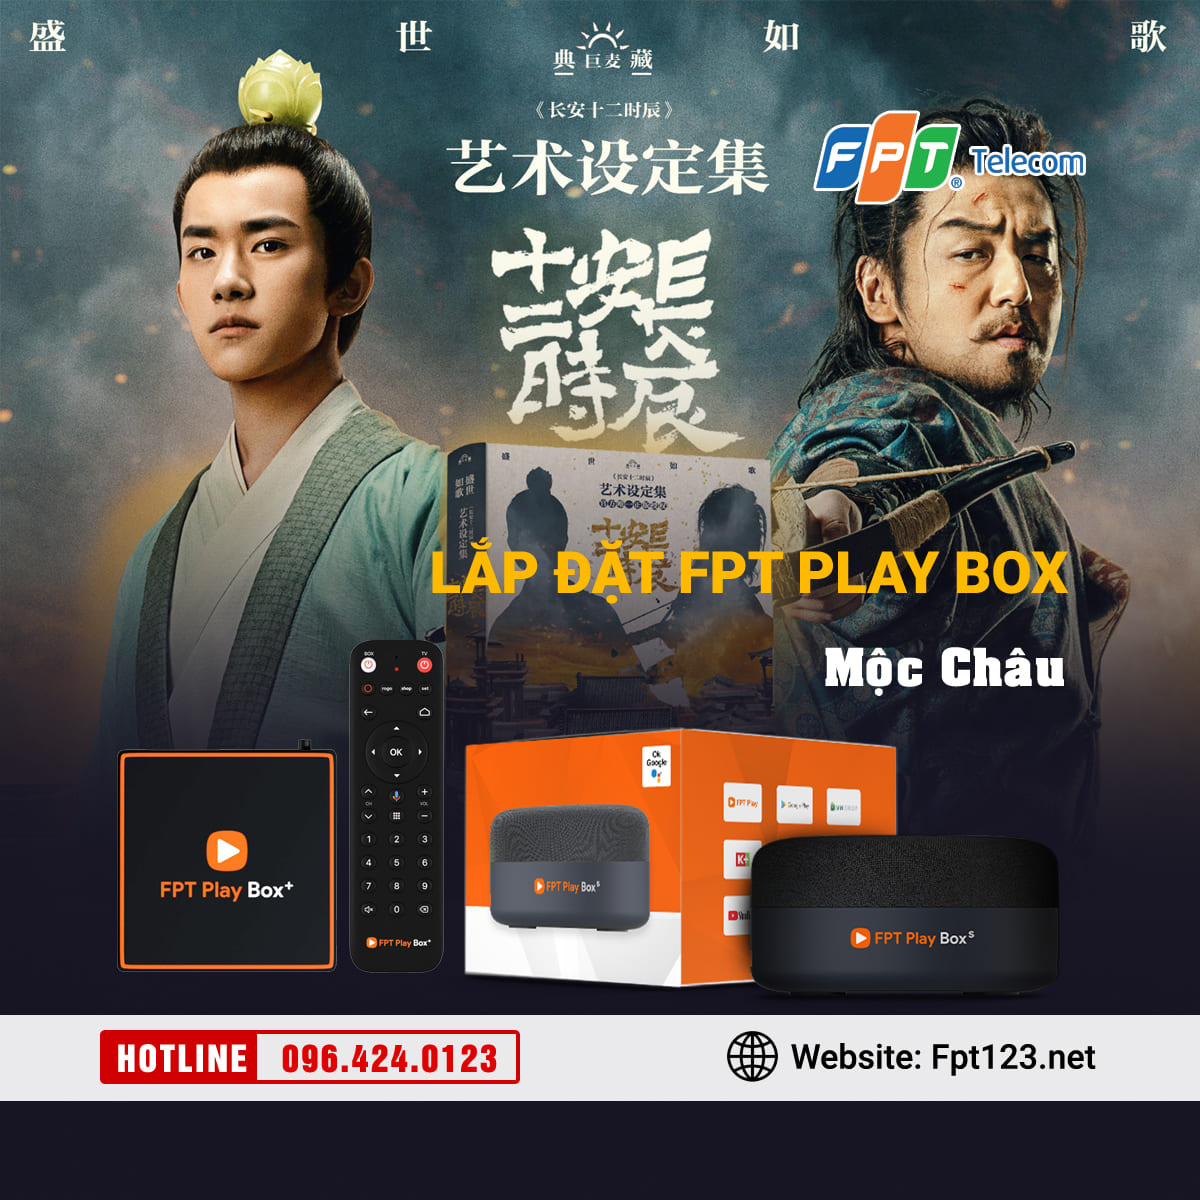 Lắp đặt FPT Play Box Mộc Châu